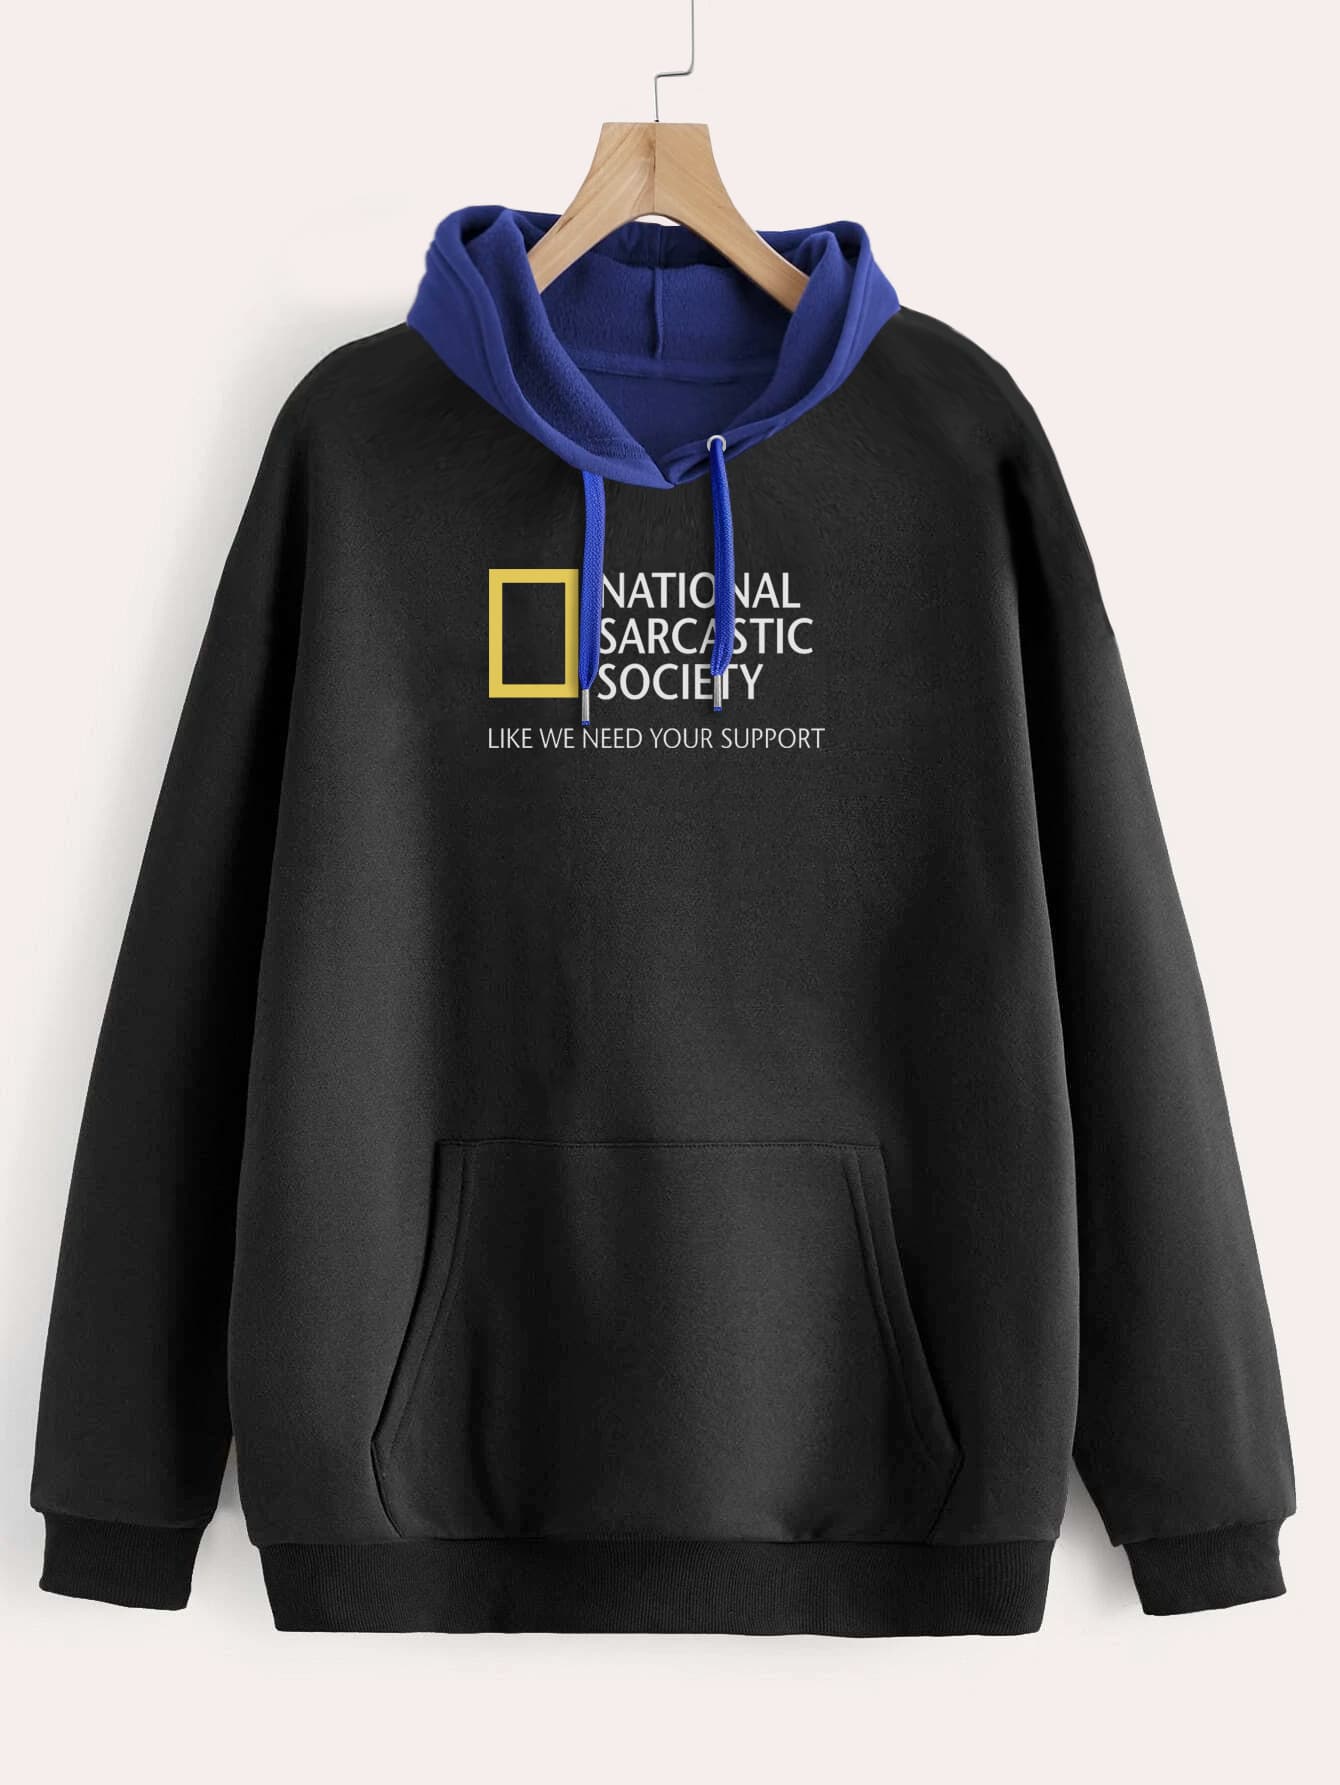 Buzo ancho hoodie National Sarcastic Society